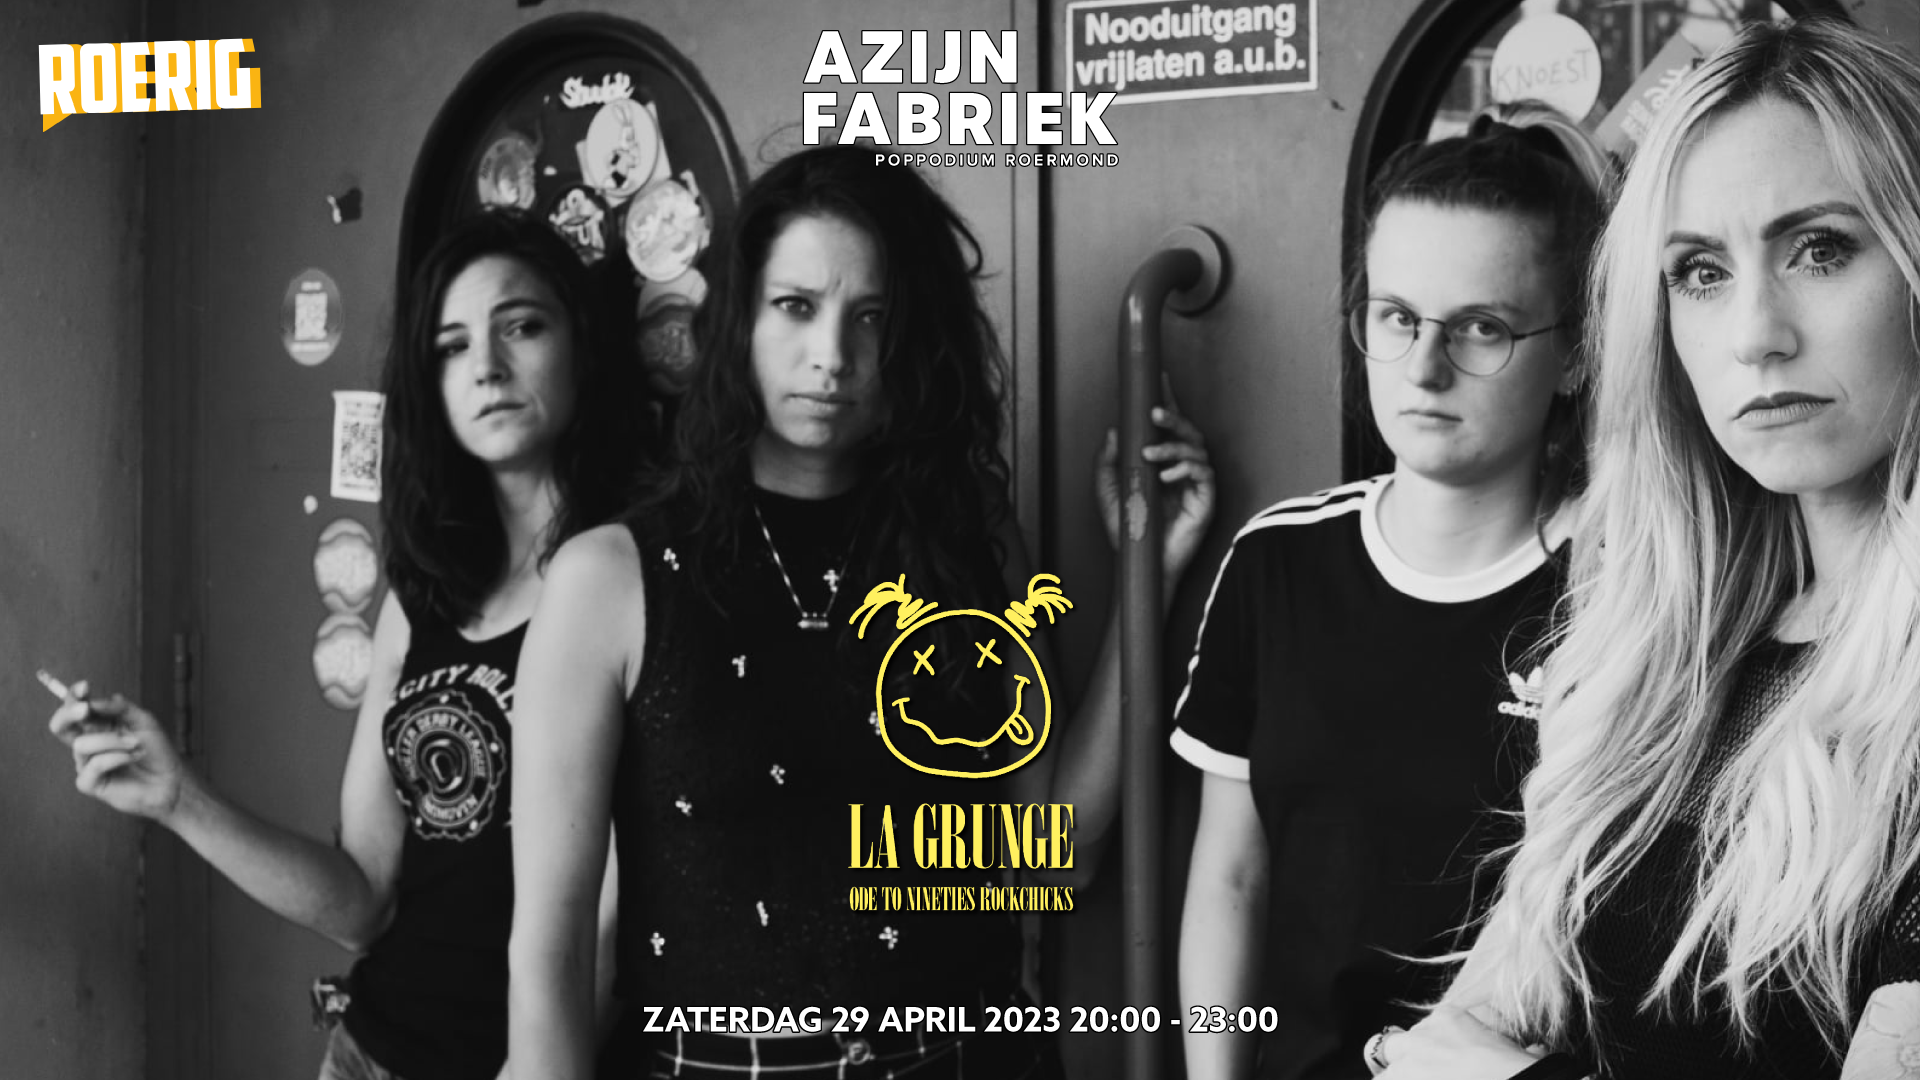 Azijnfabriek | Concert - La Grunge - Ode to nineties rockchicks | Roerig